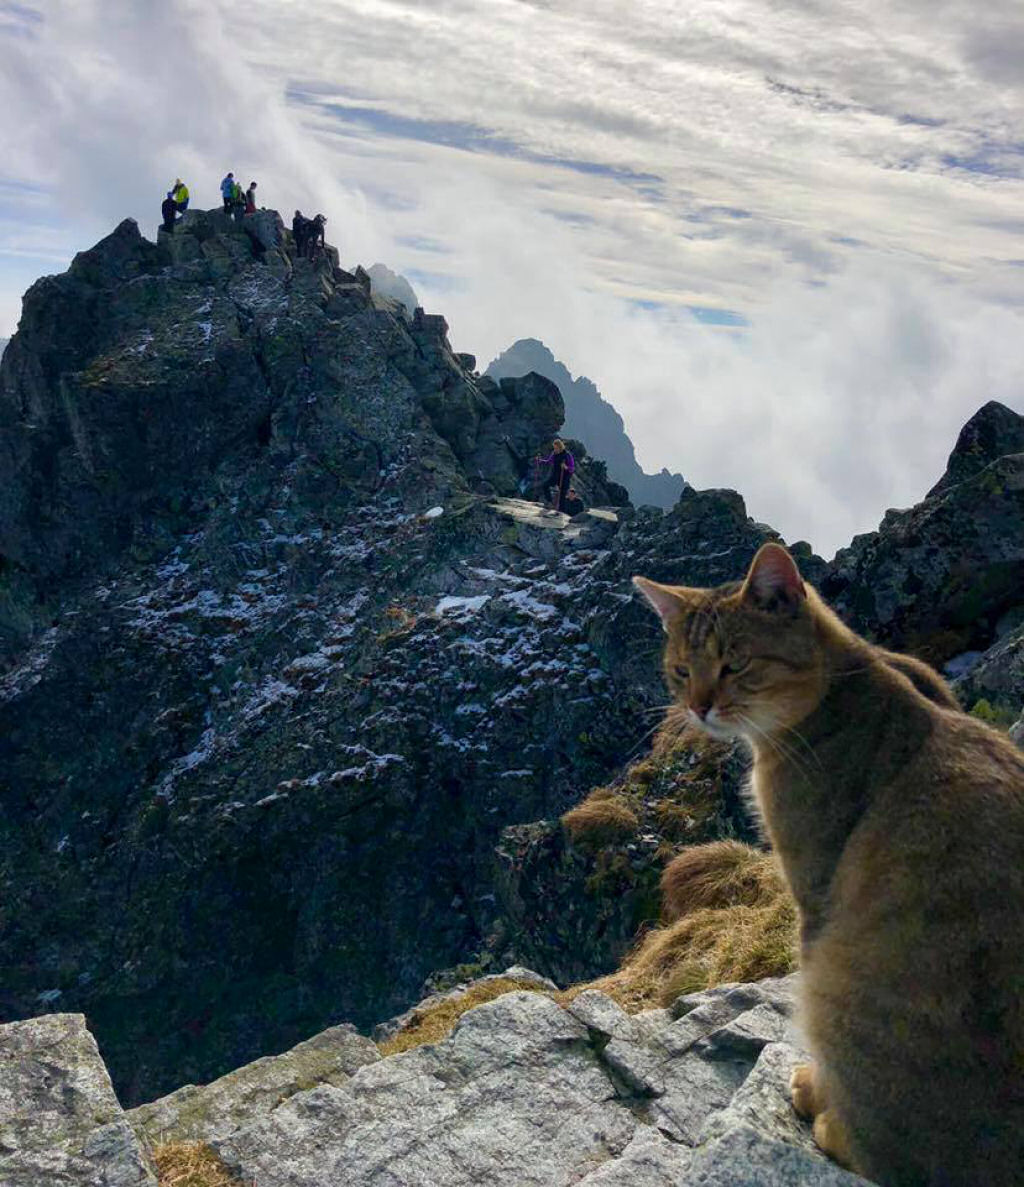 Polons escala montanha de 2.500 metros e encontra um gato domstico no topo esperando por ele